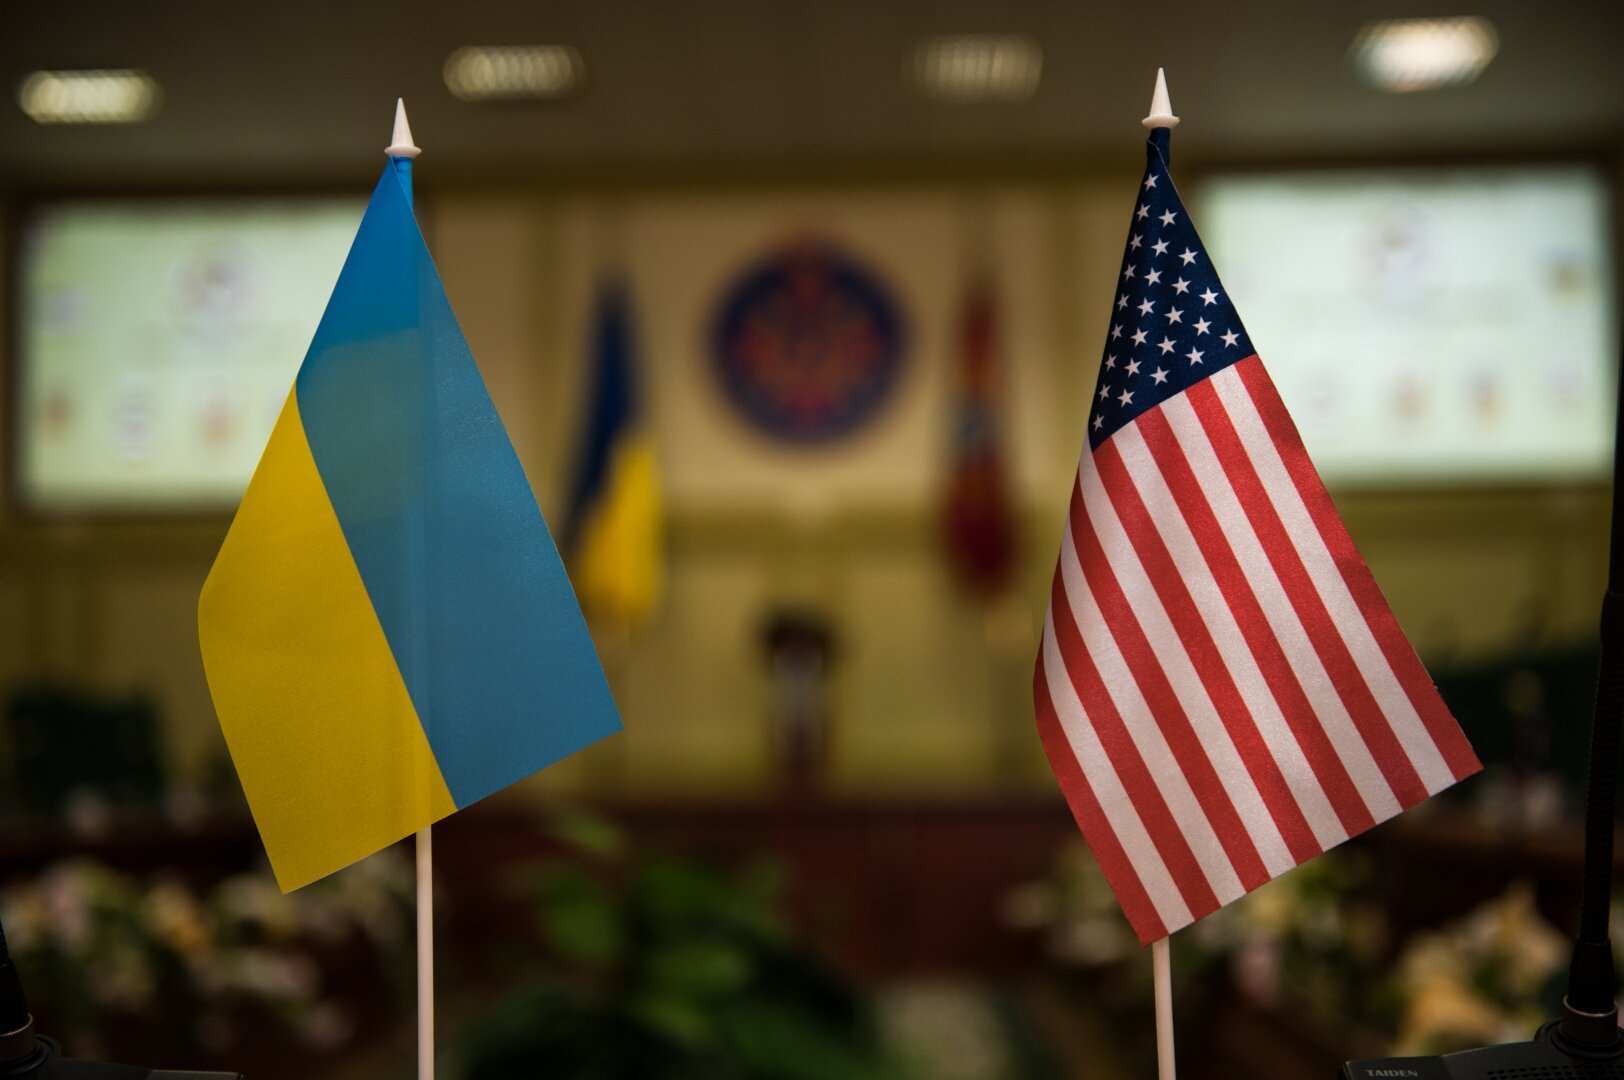 Украина метит в главные союзники США вне НАТО 